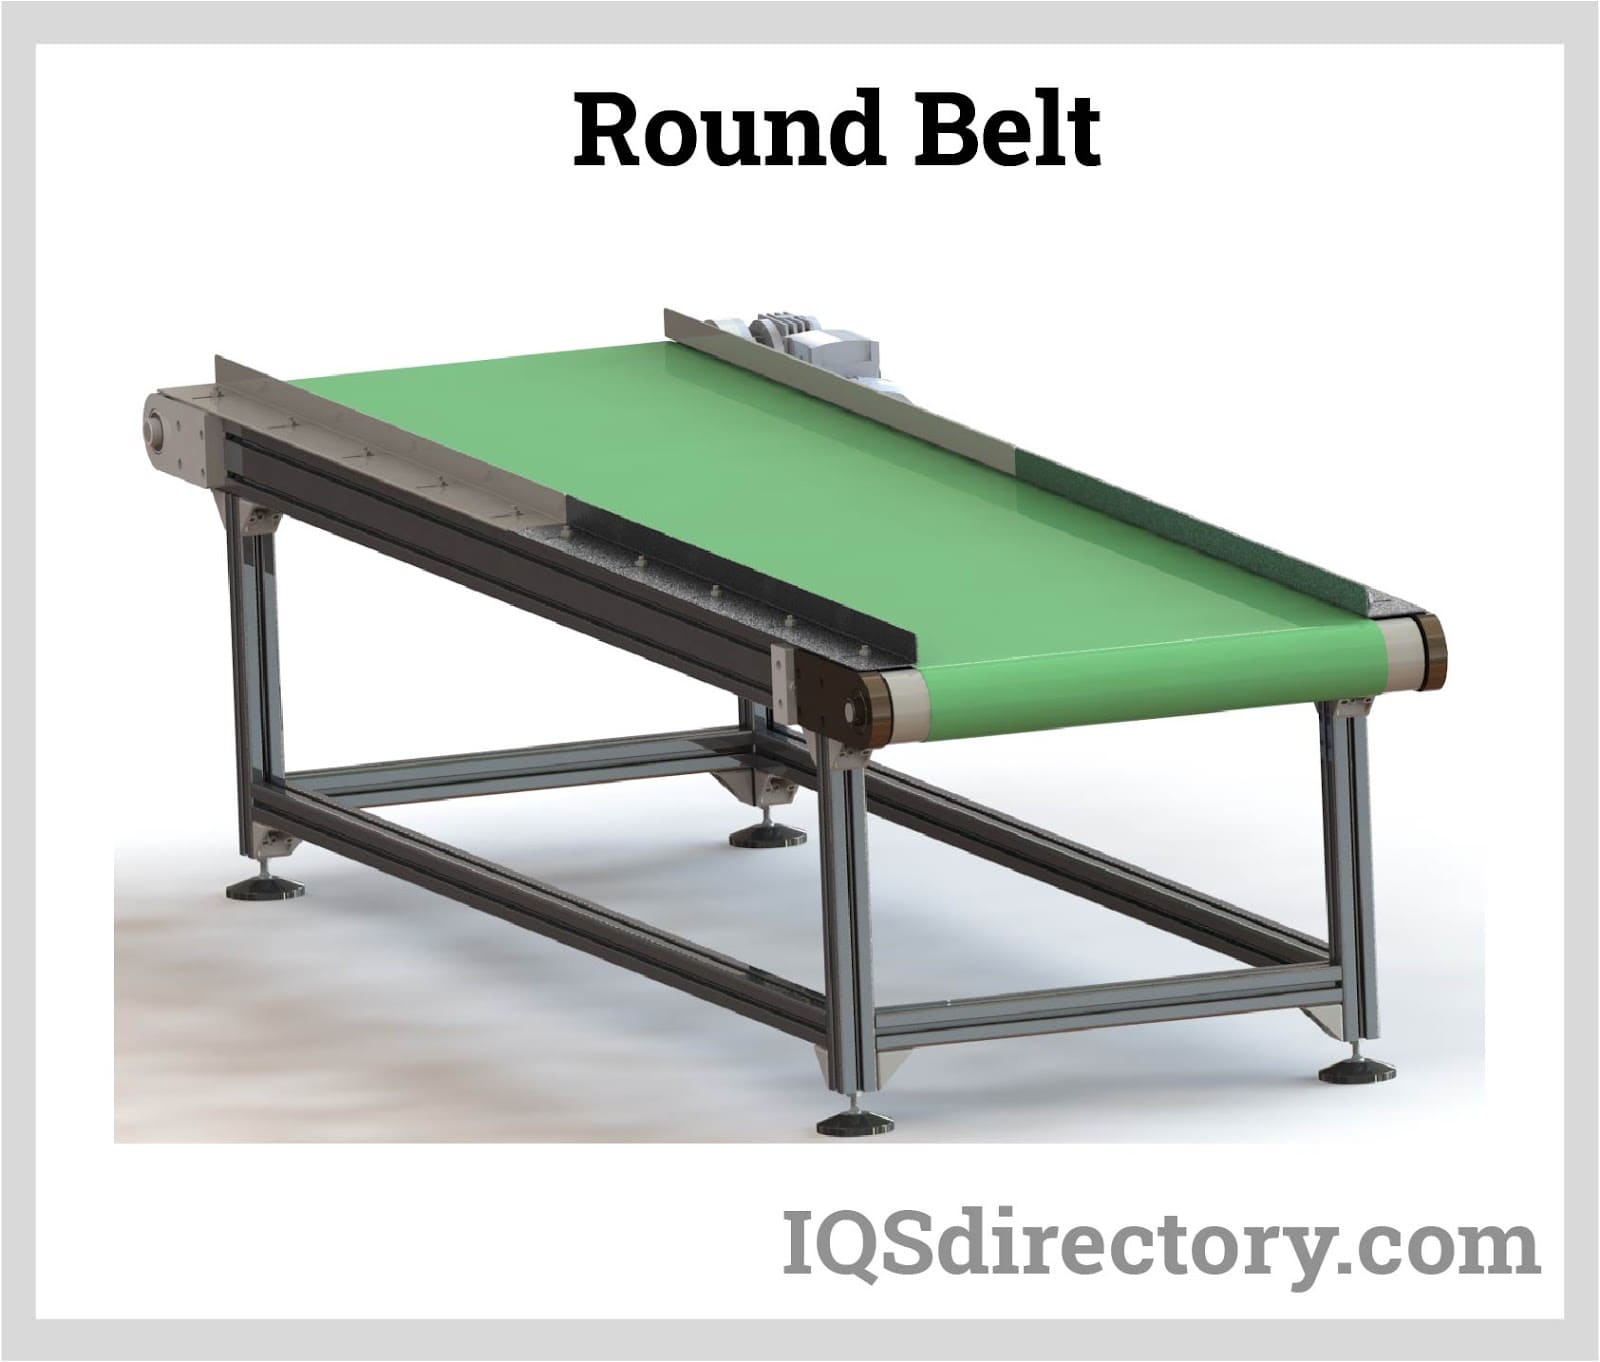 Round Belt